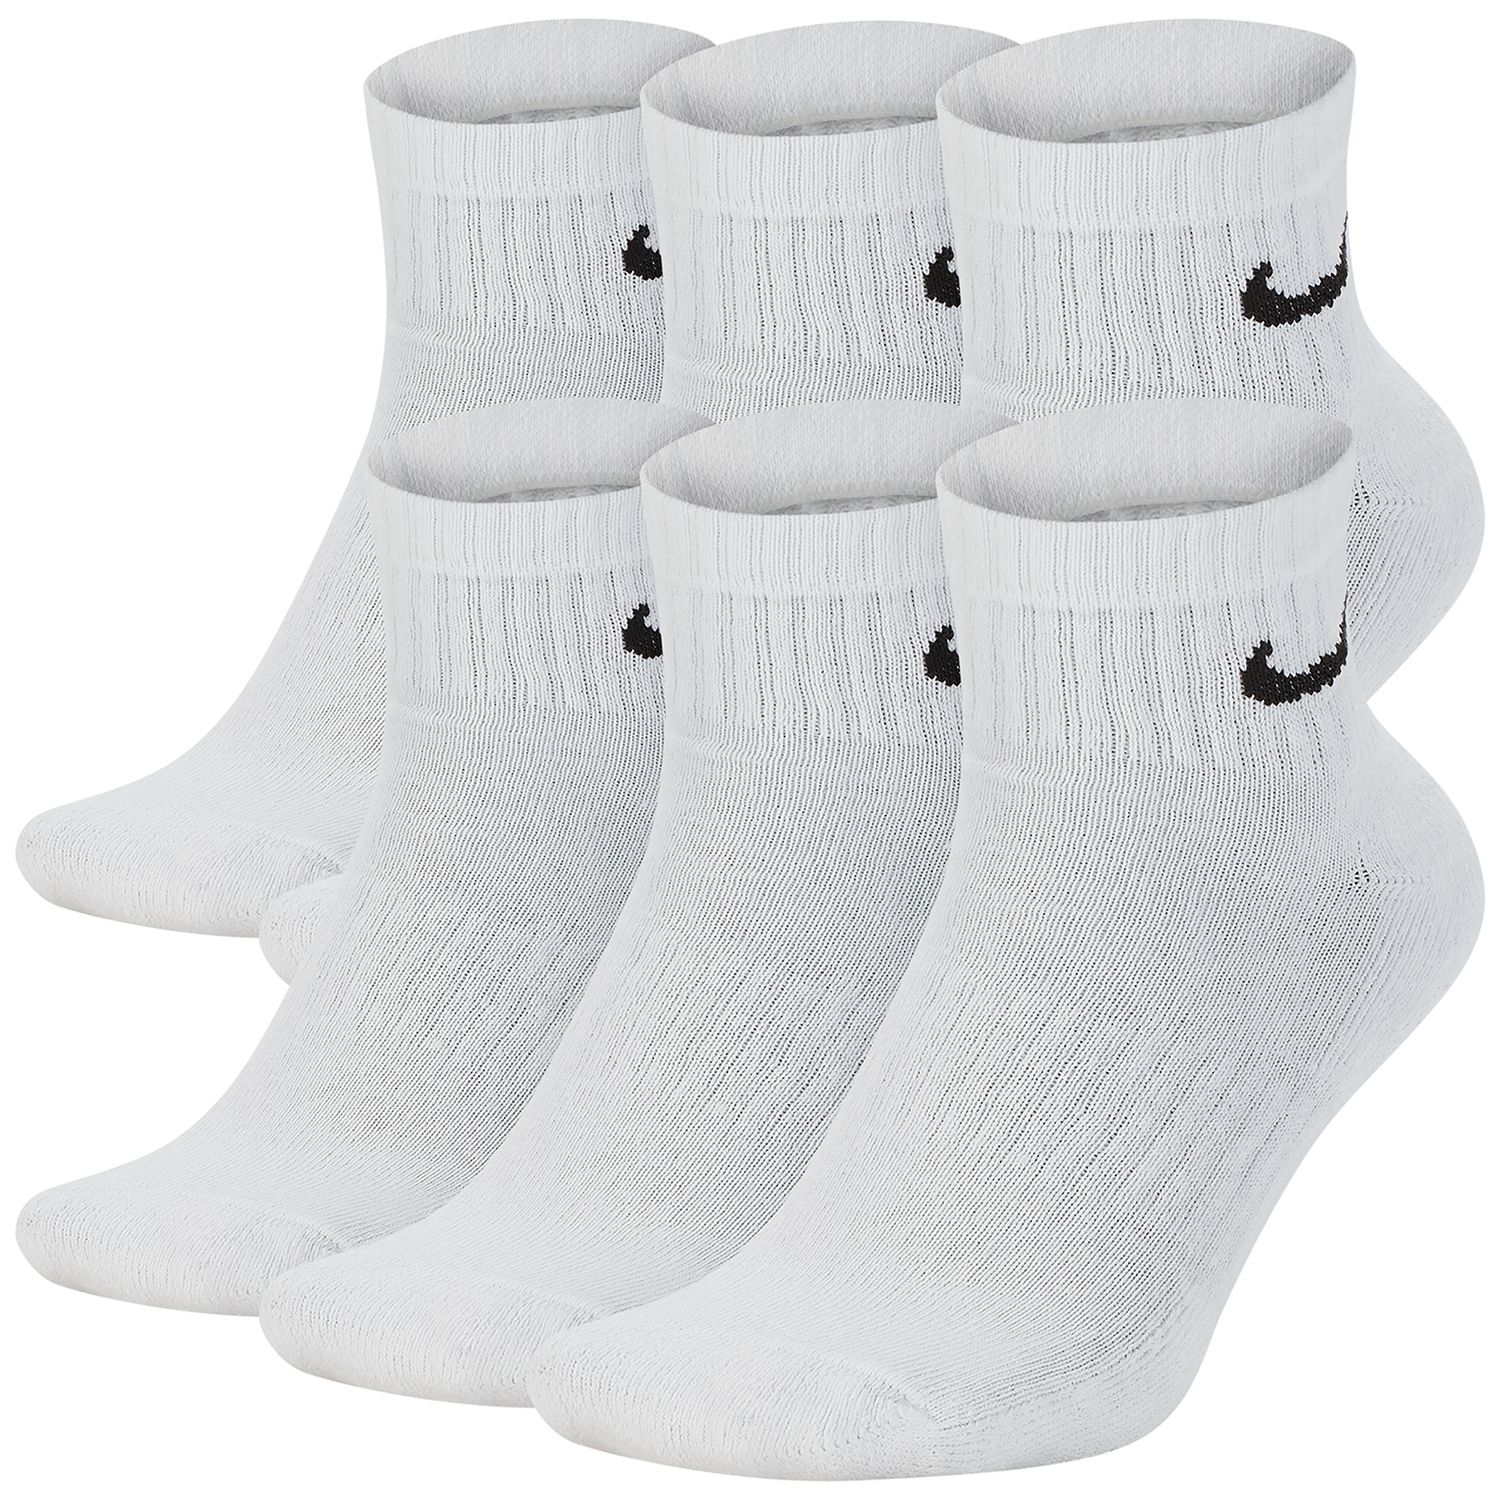 mens nike ankle socks white